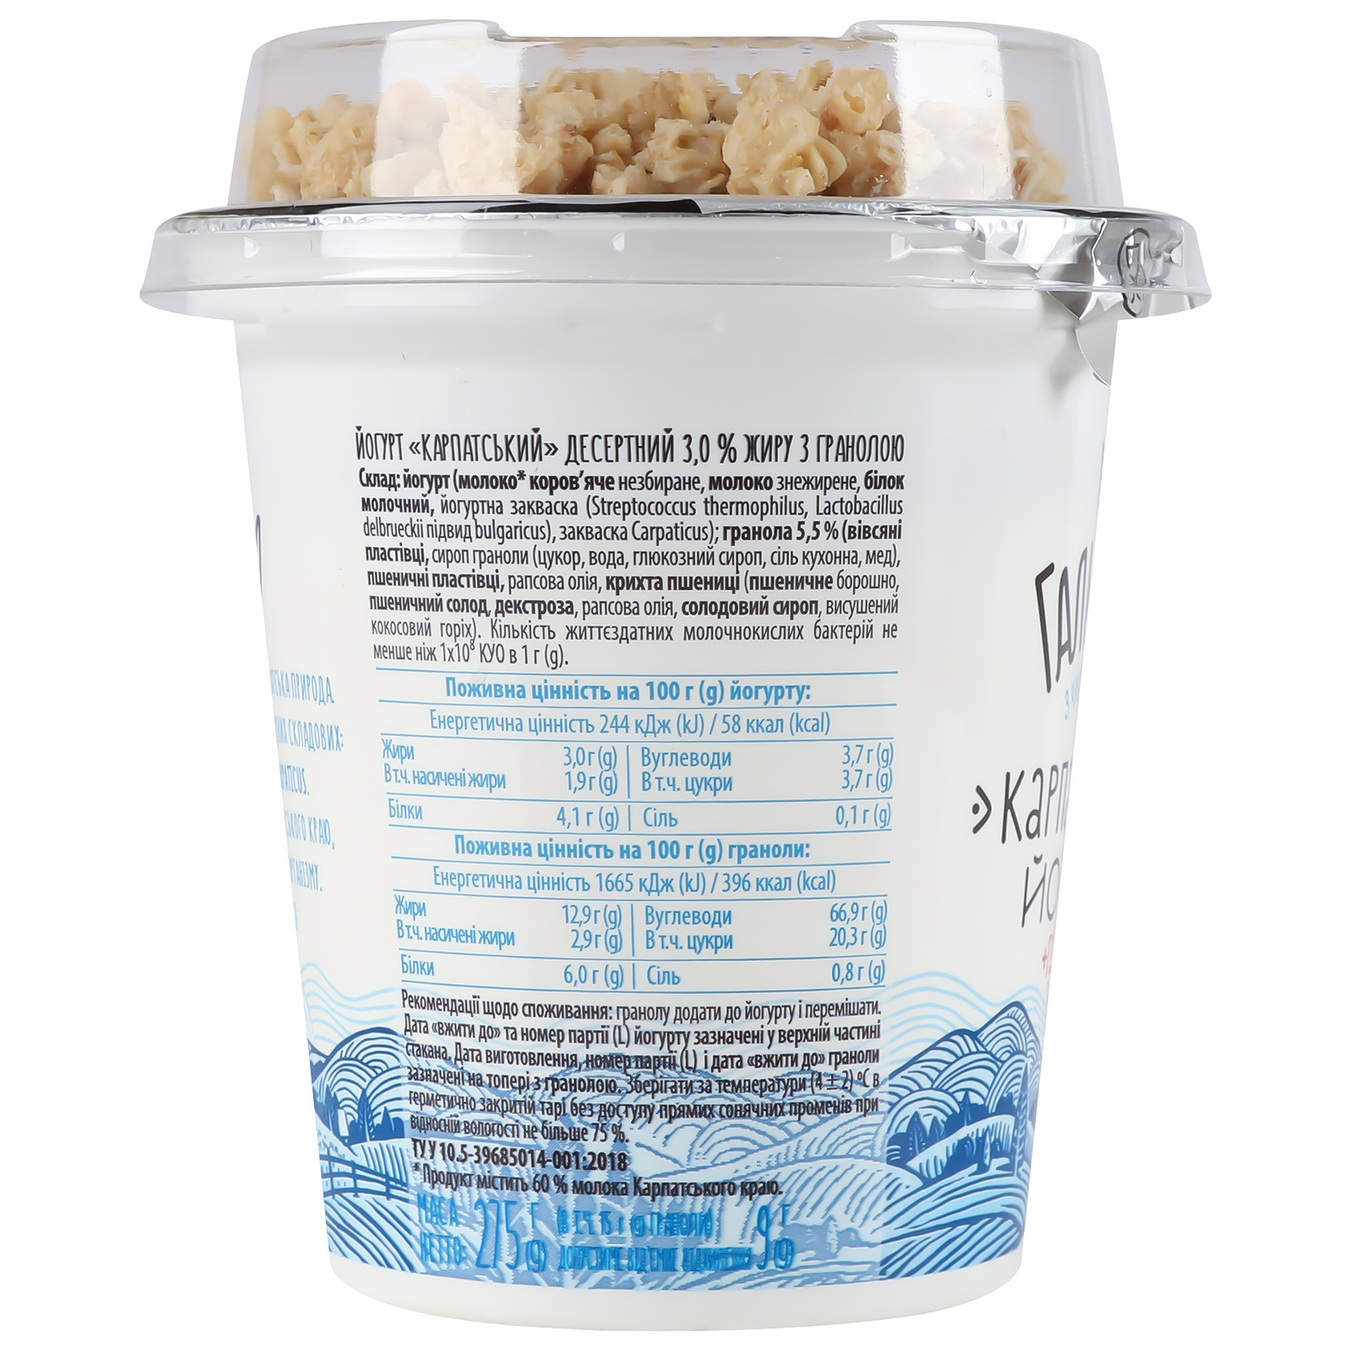 Galychyna Carpathian Sugar-Free Granola Flavored Yogurt 3% 275g 6